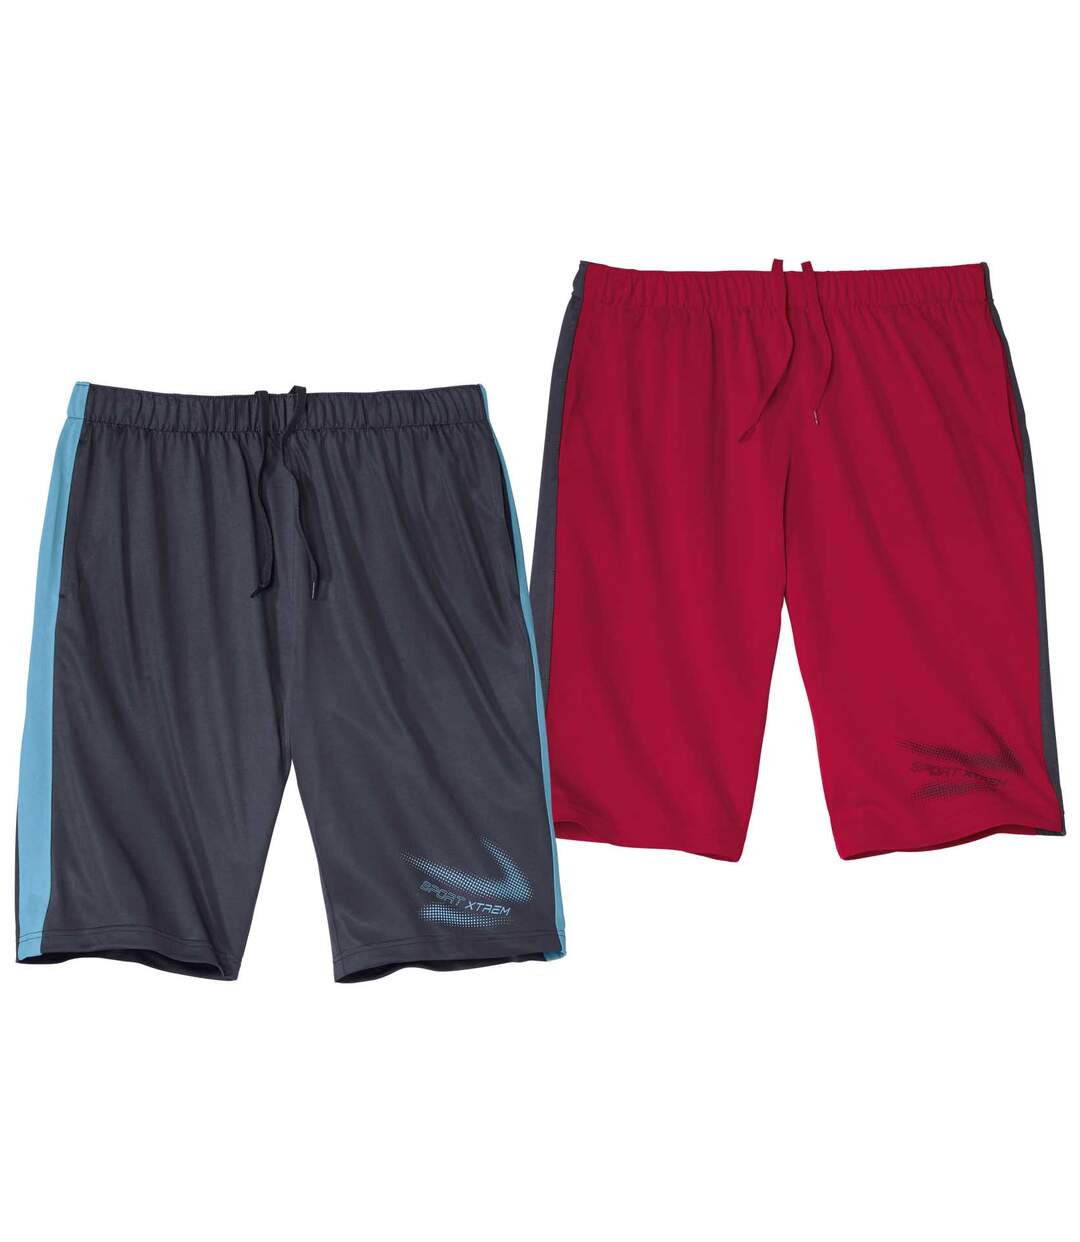 Pack of 2 Men's Sporty Shorts - Navy Red Atlas For Men